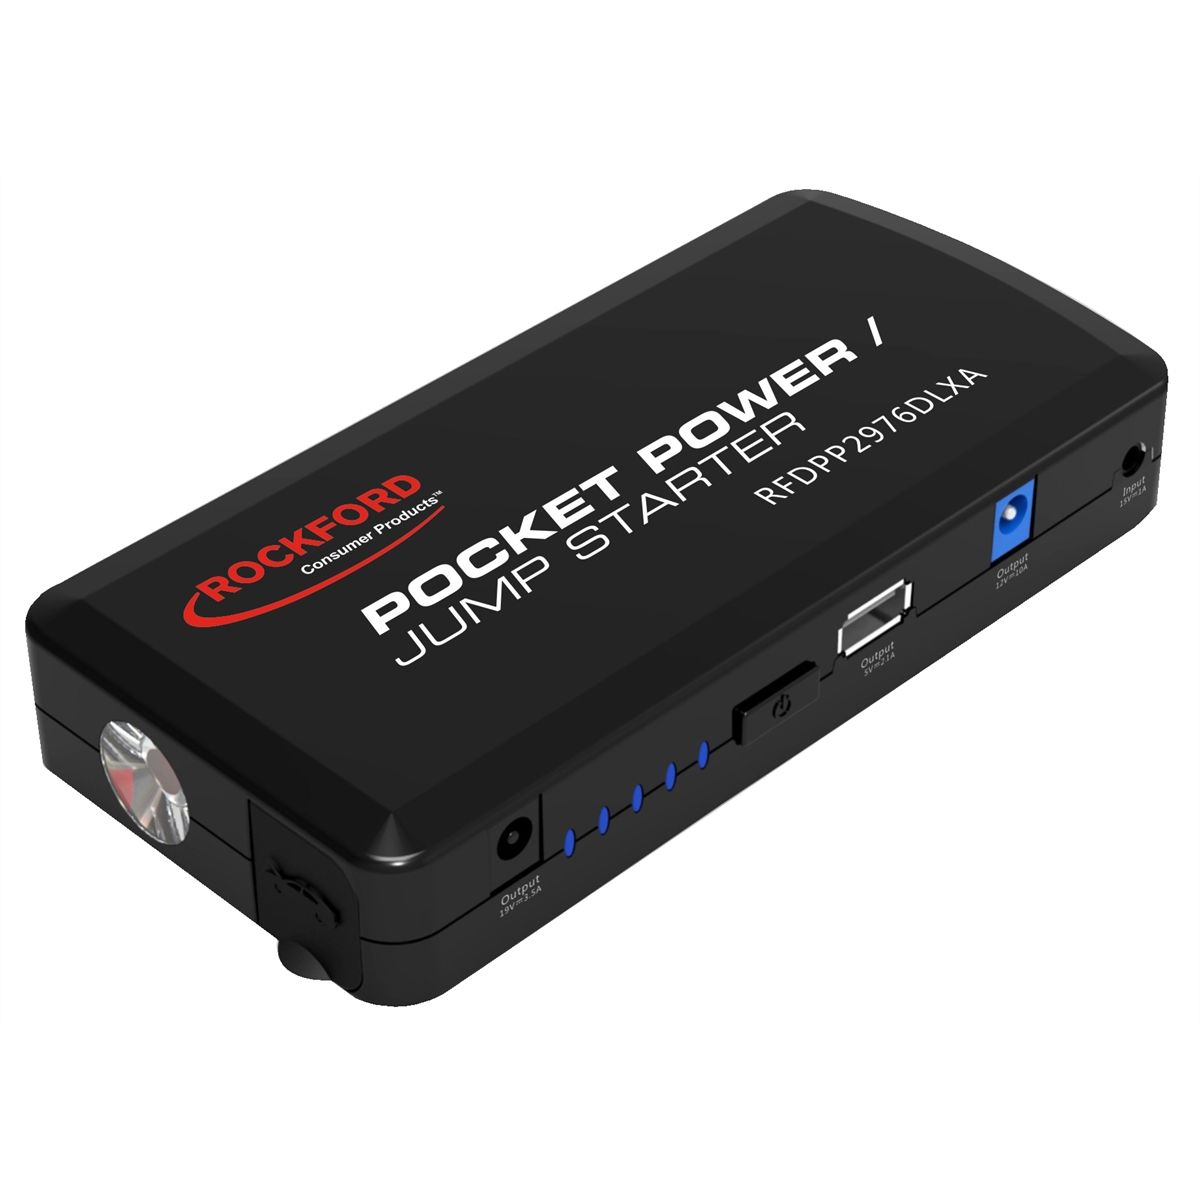 Rockford Pocket Power/Jump Starter , 12000mAh,Black color CED2976-2R